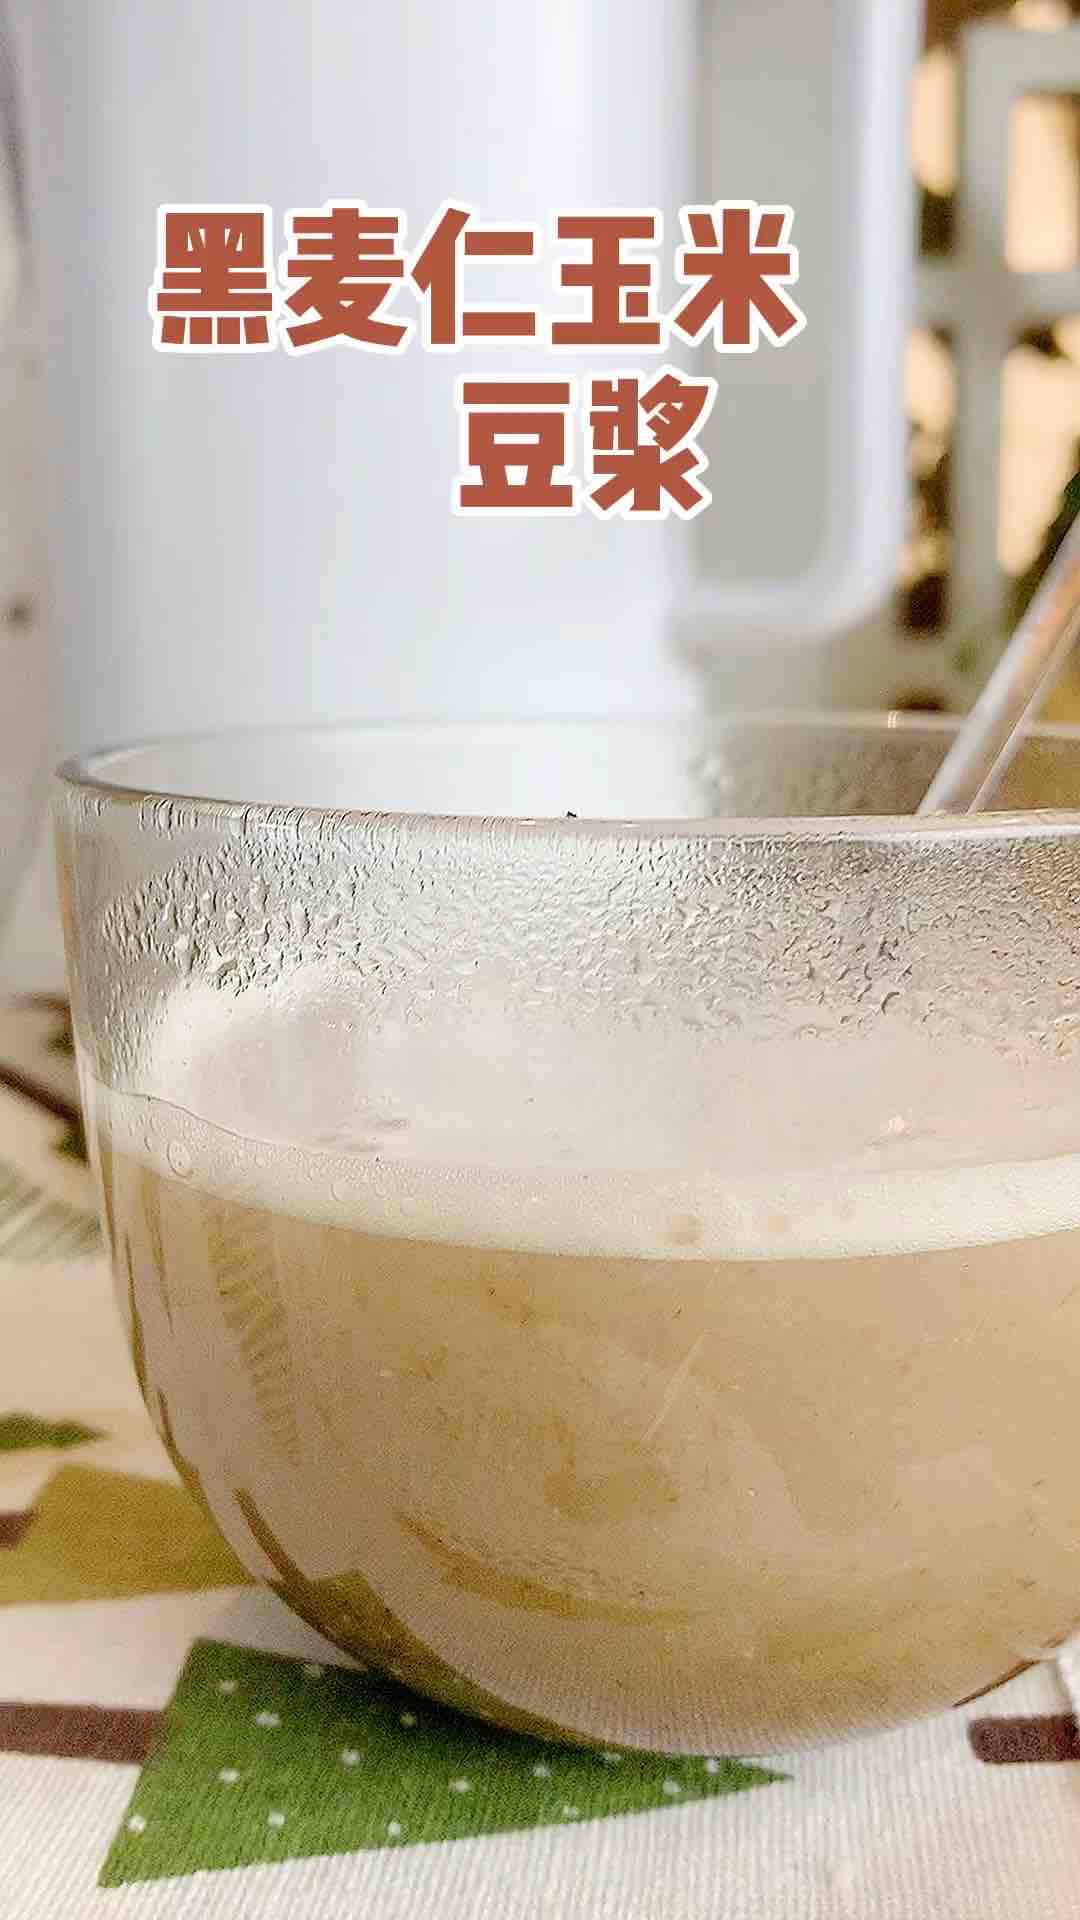 Rye Kernel Corn Soy Milk recipe